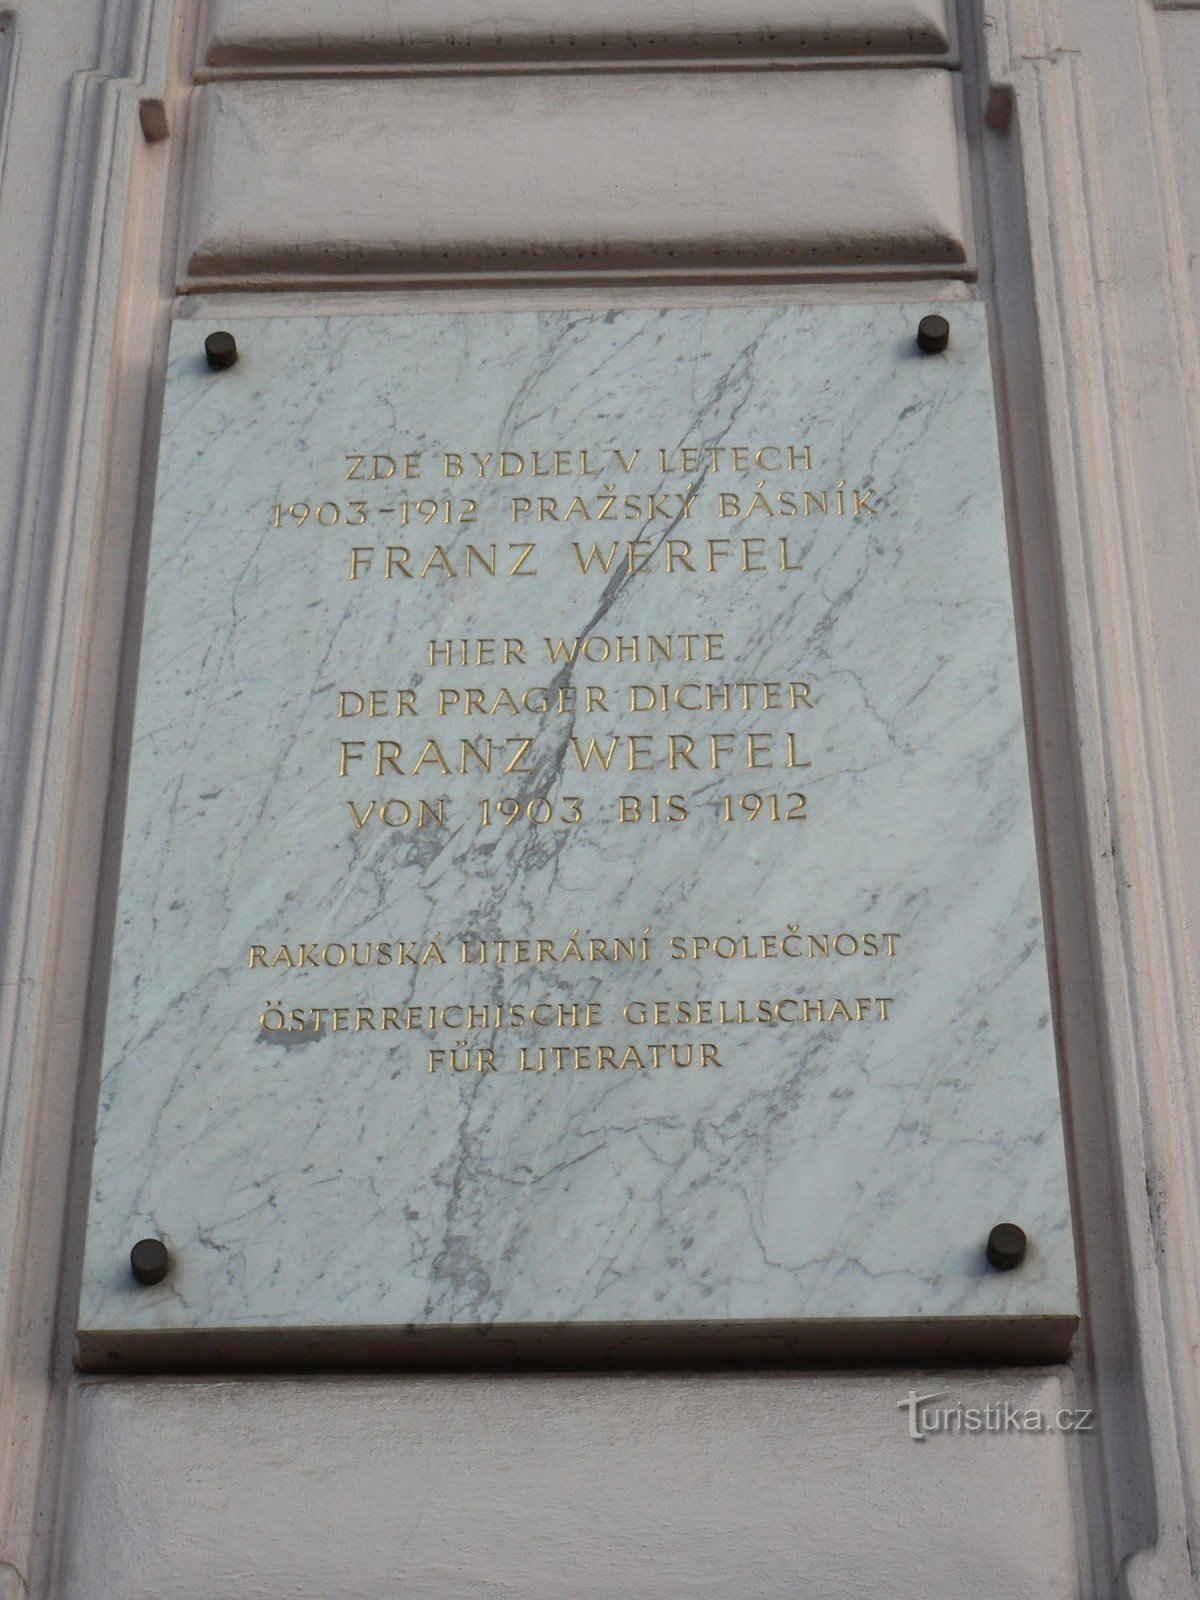 Placă memorială Franz Werfel